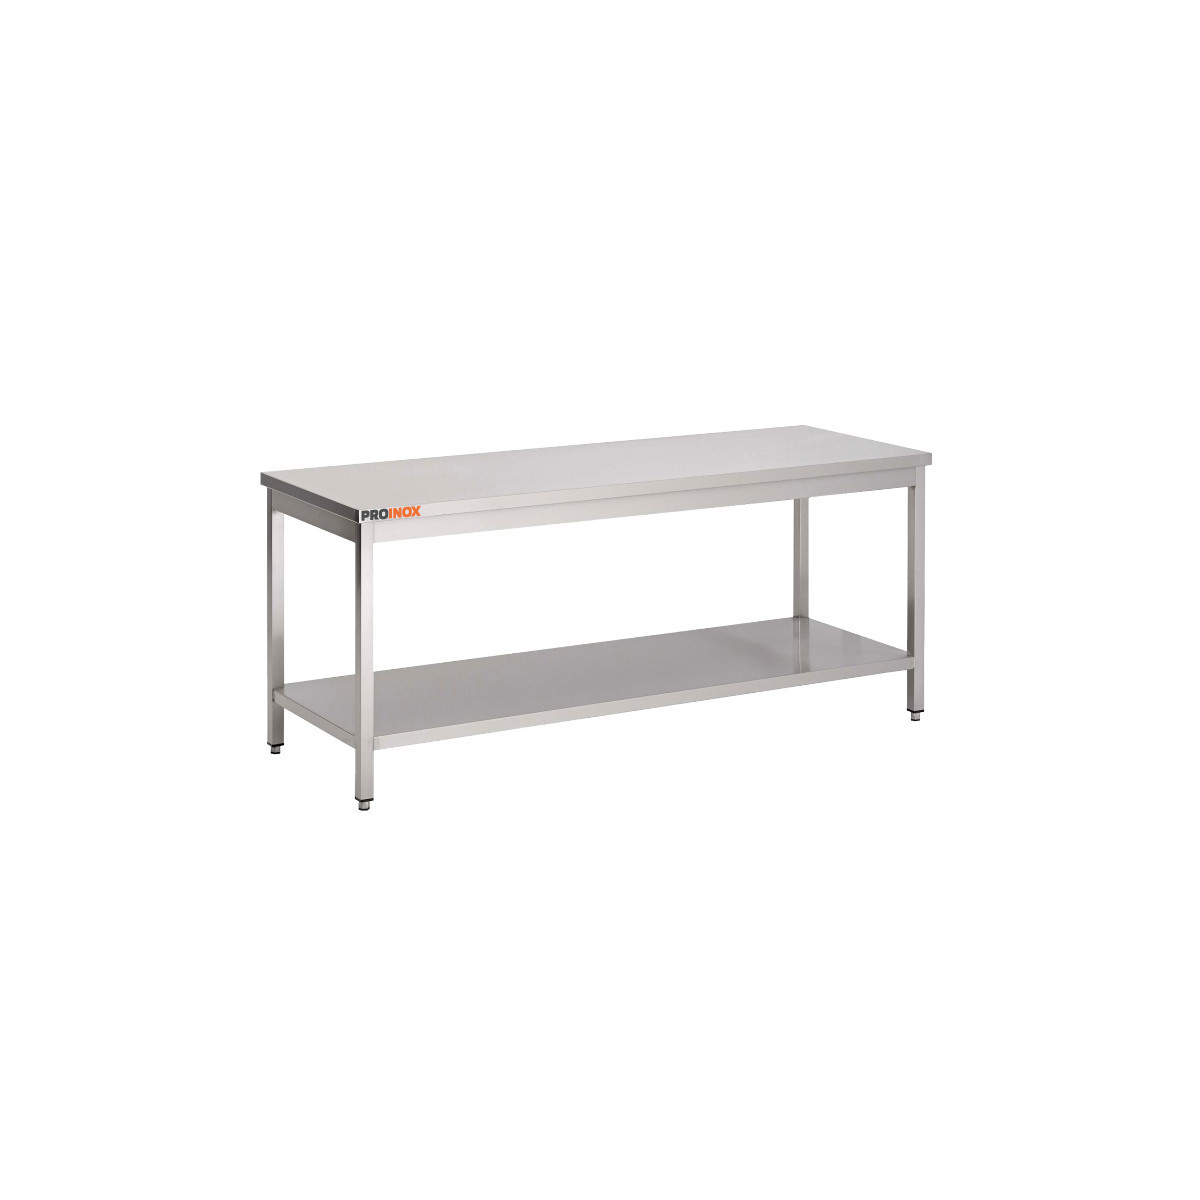 Table inox professionnelle 100x70x85 mm avec étagère basse